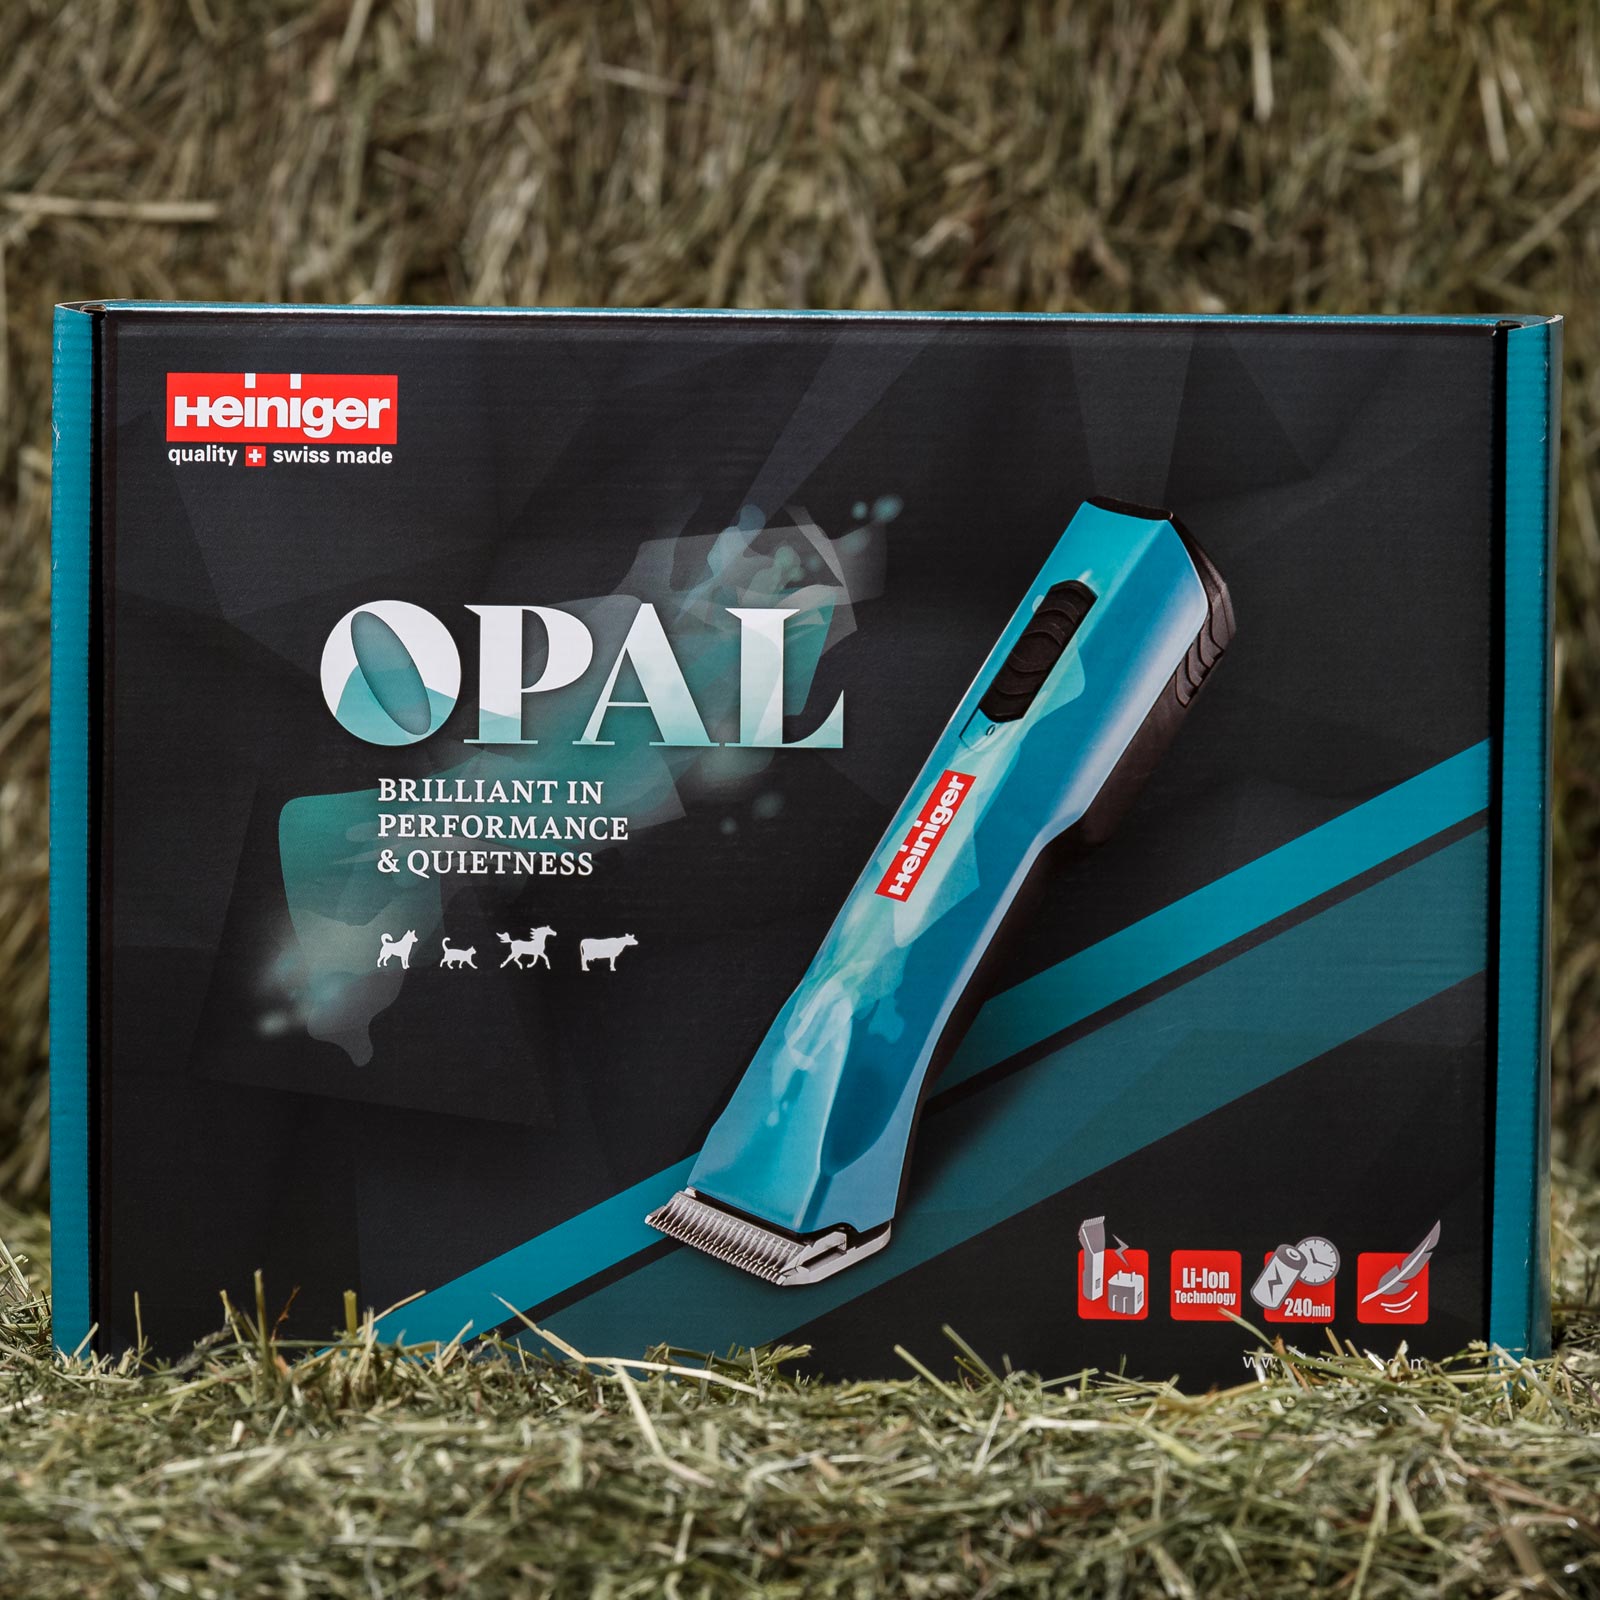 Heiniger Opal Clipper 2x battery